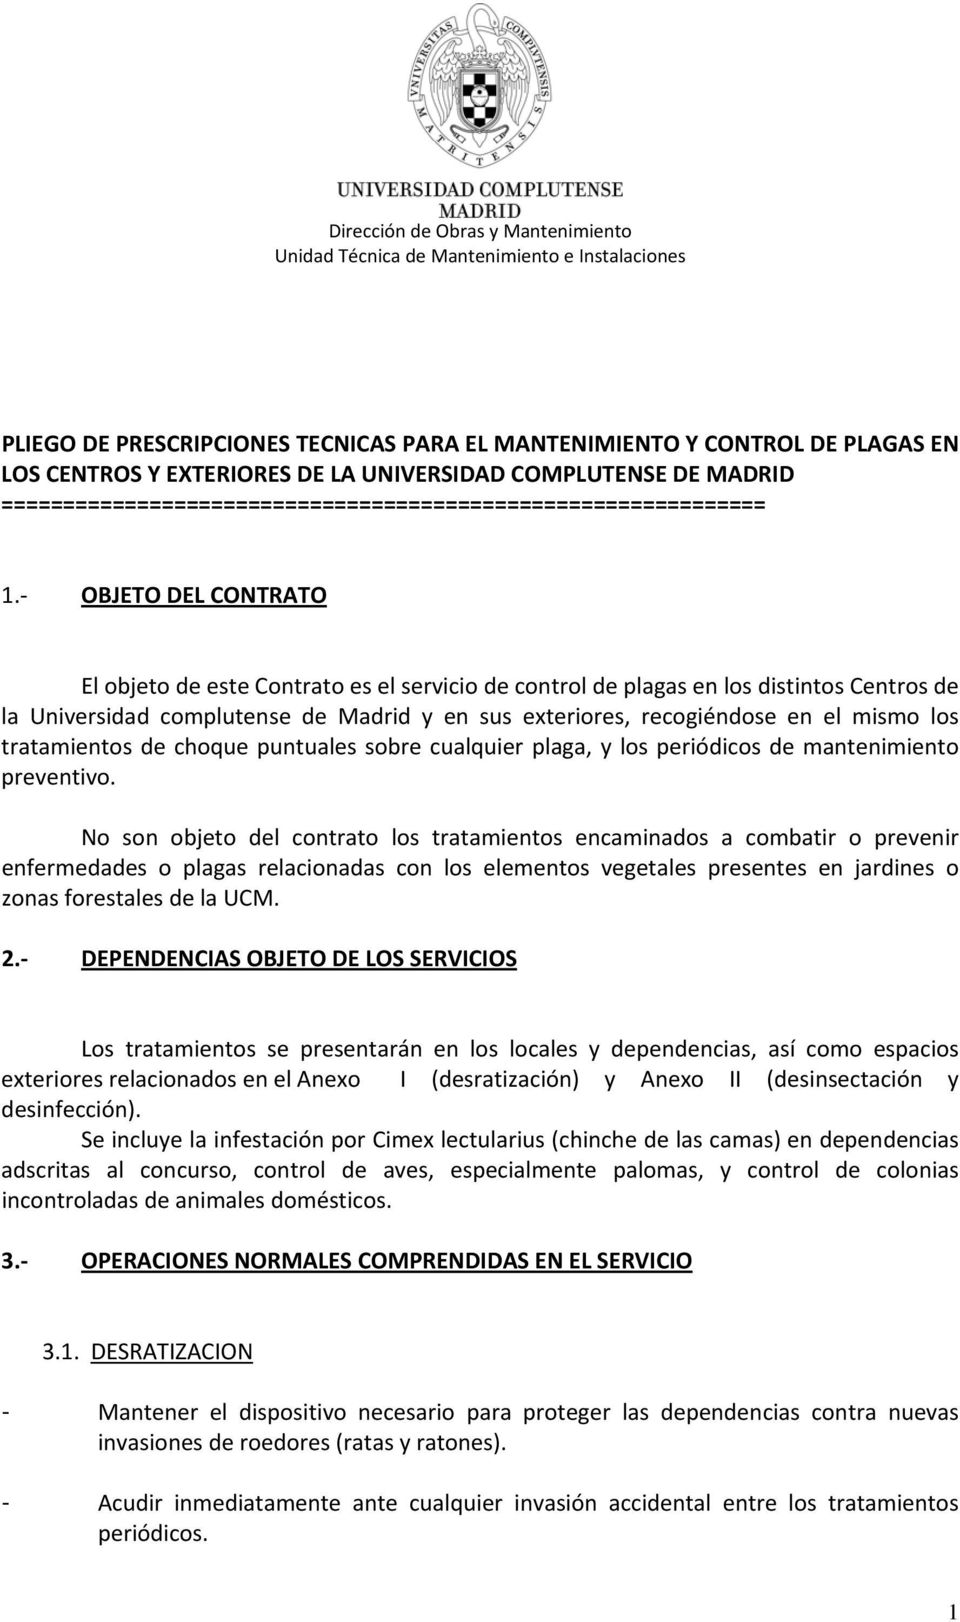 OBJETO DEL CONTRATO El objeto de este Contrato es el servicio de control de plagas en los distintos Centros de la Universidad complutense de Madrid y en sus exteriores, recogiéndose en el mismo los